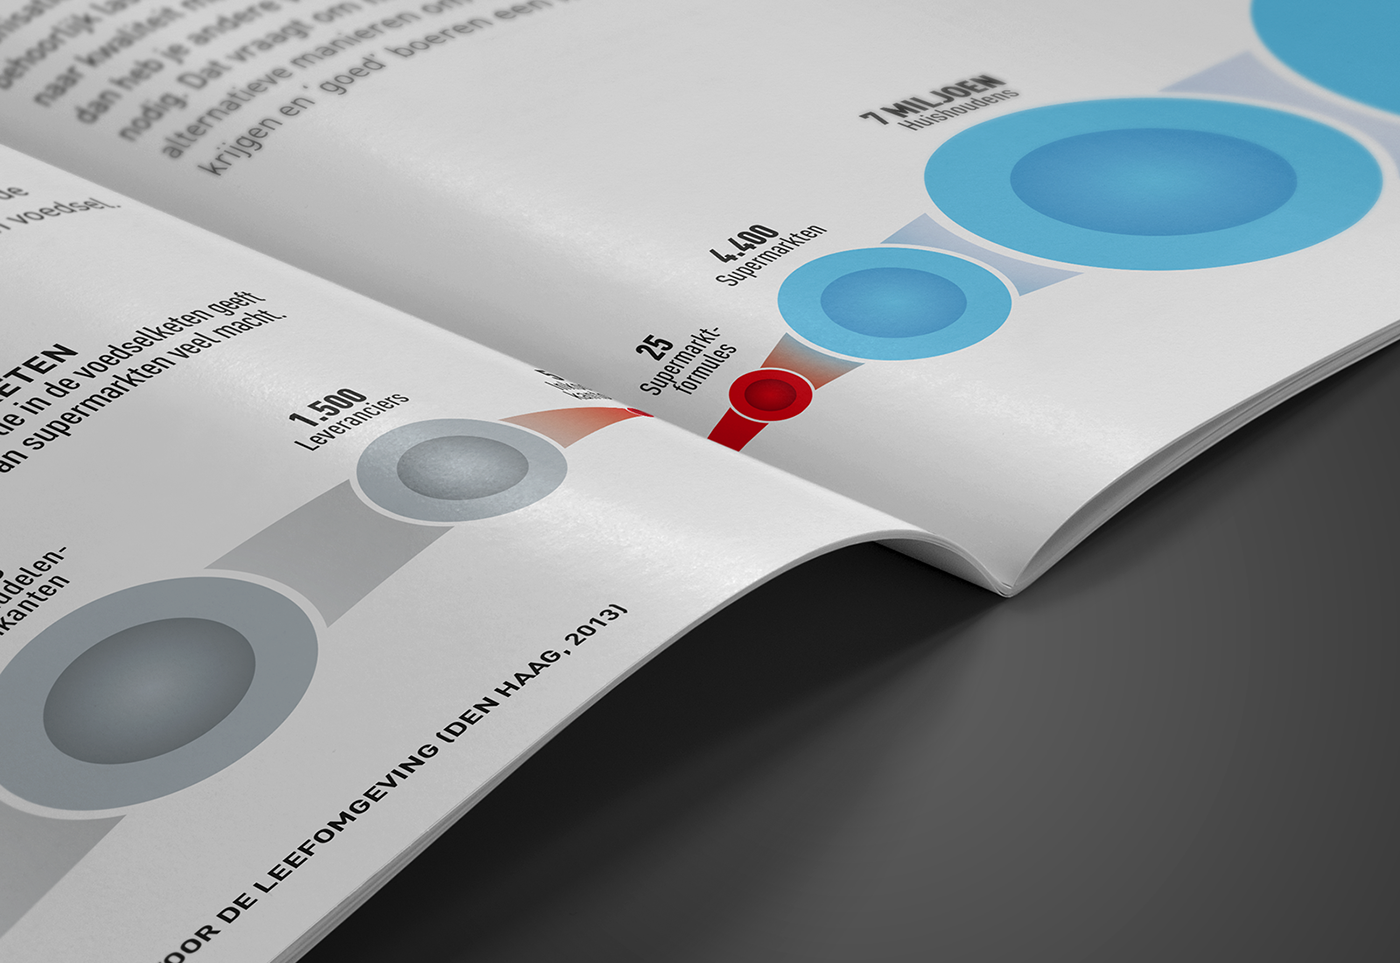 BrabantKennis 10 kiemen Total Public Horizon 2014-2015 information design infographics editorial